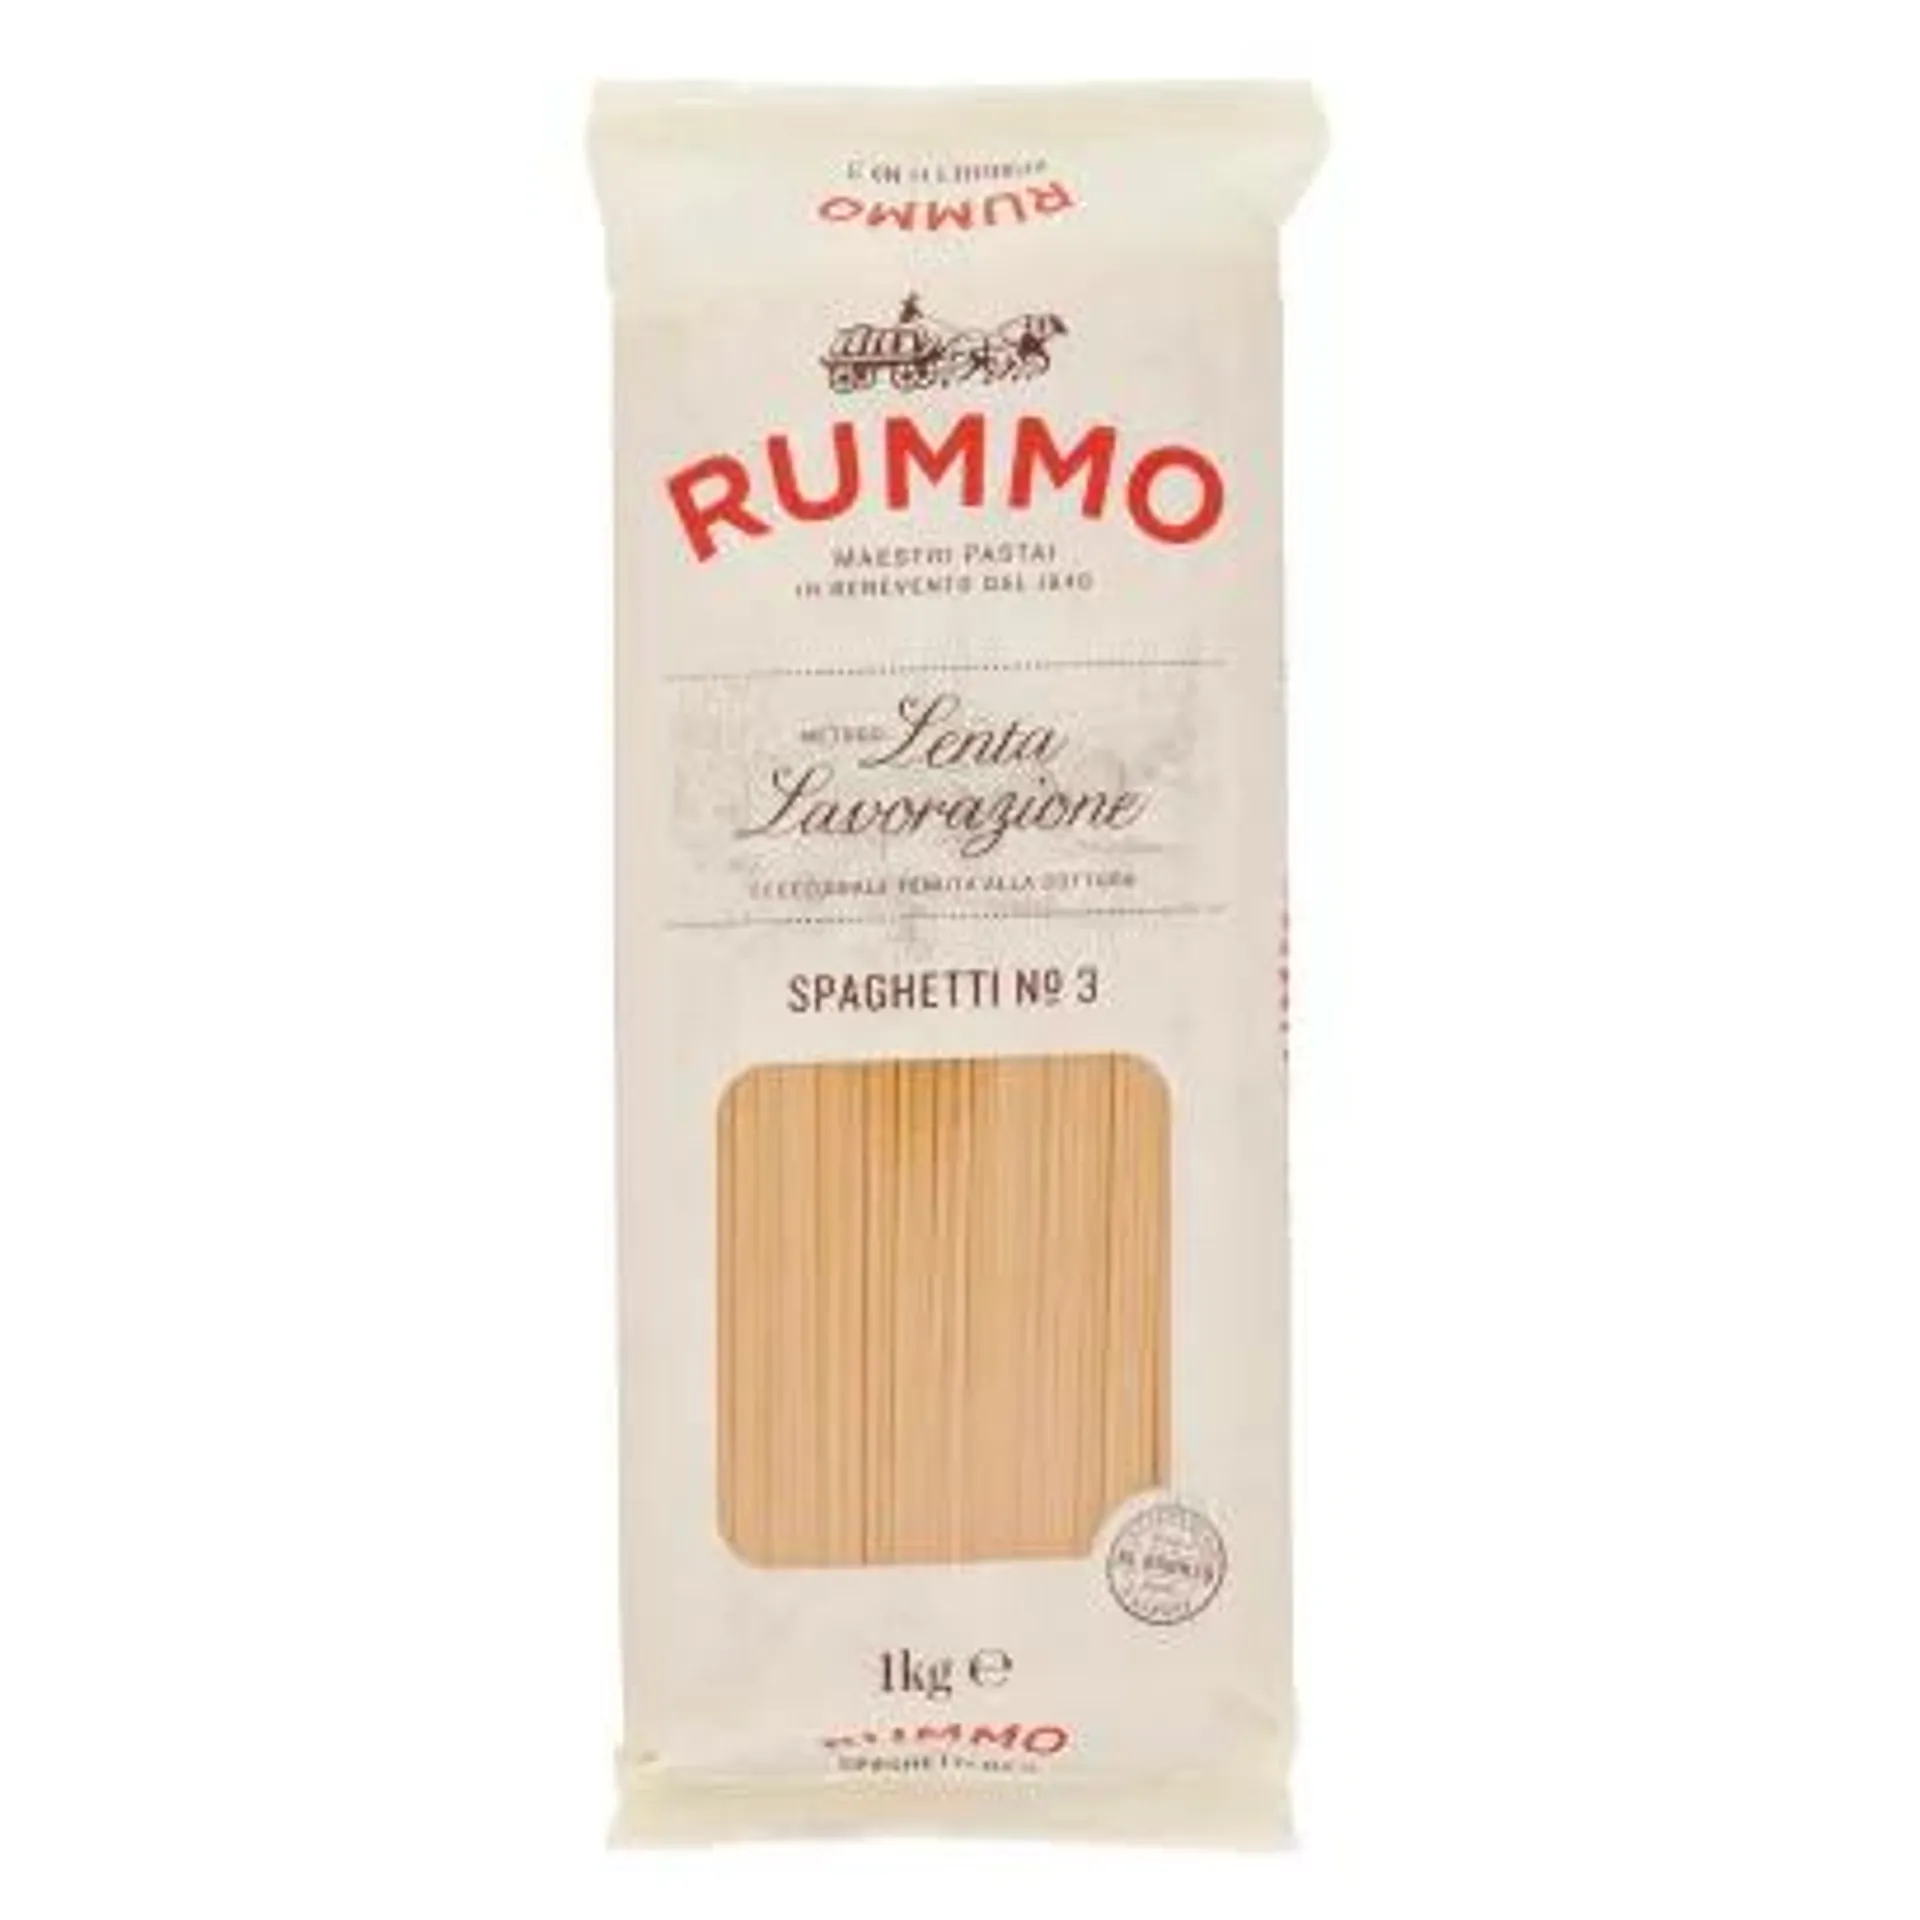 Rummo Spaghetti Durum Wheat Semolina Pasta 1kg